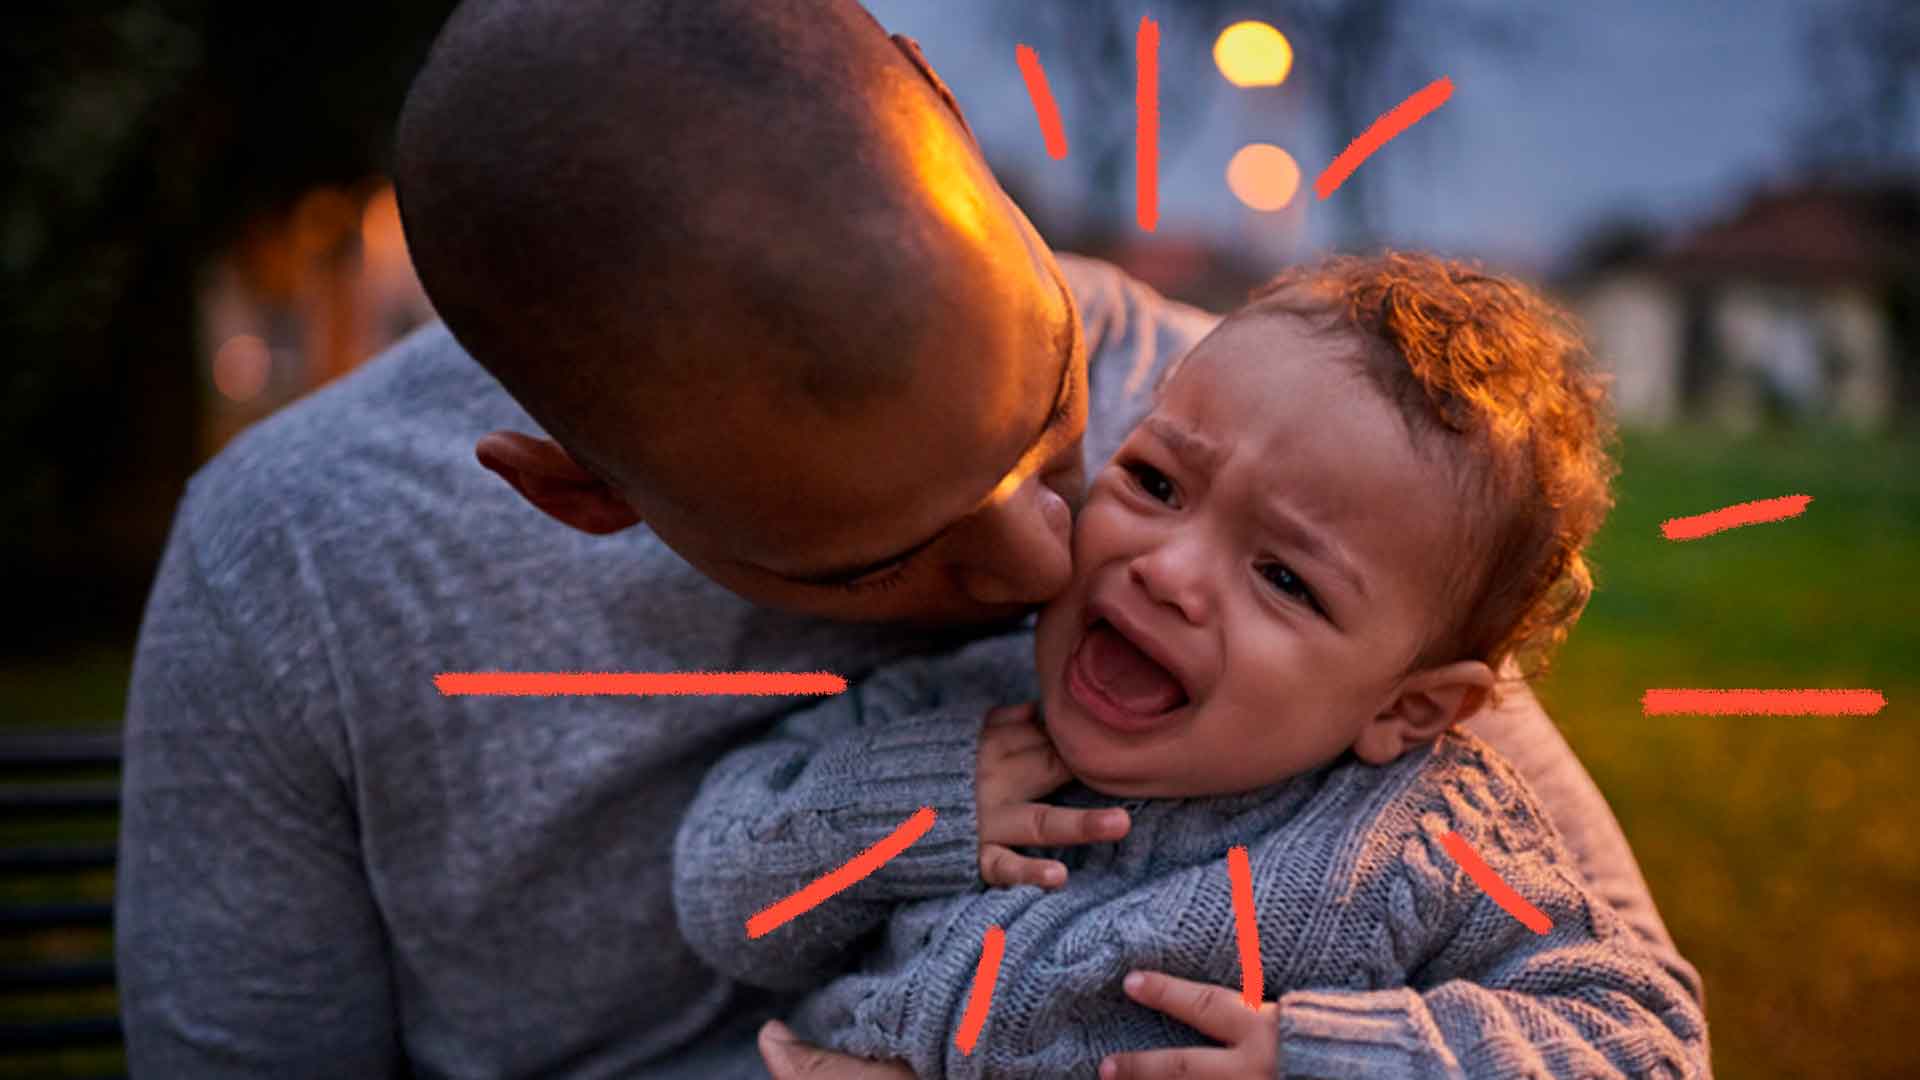 Beijar desconhecidos: Imagem de um adulto com um bebê no colo, beijando-o. O bebê está chorando